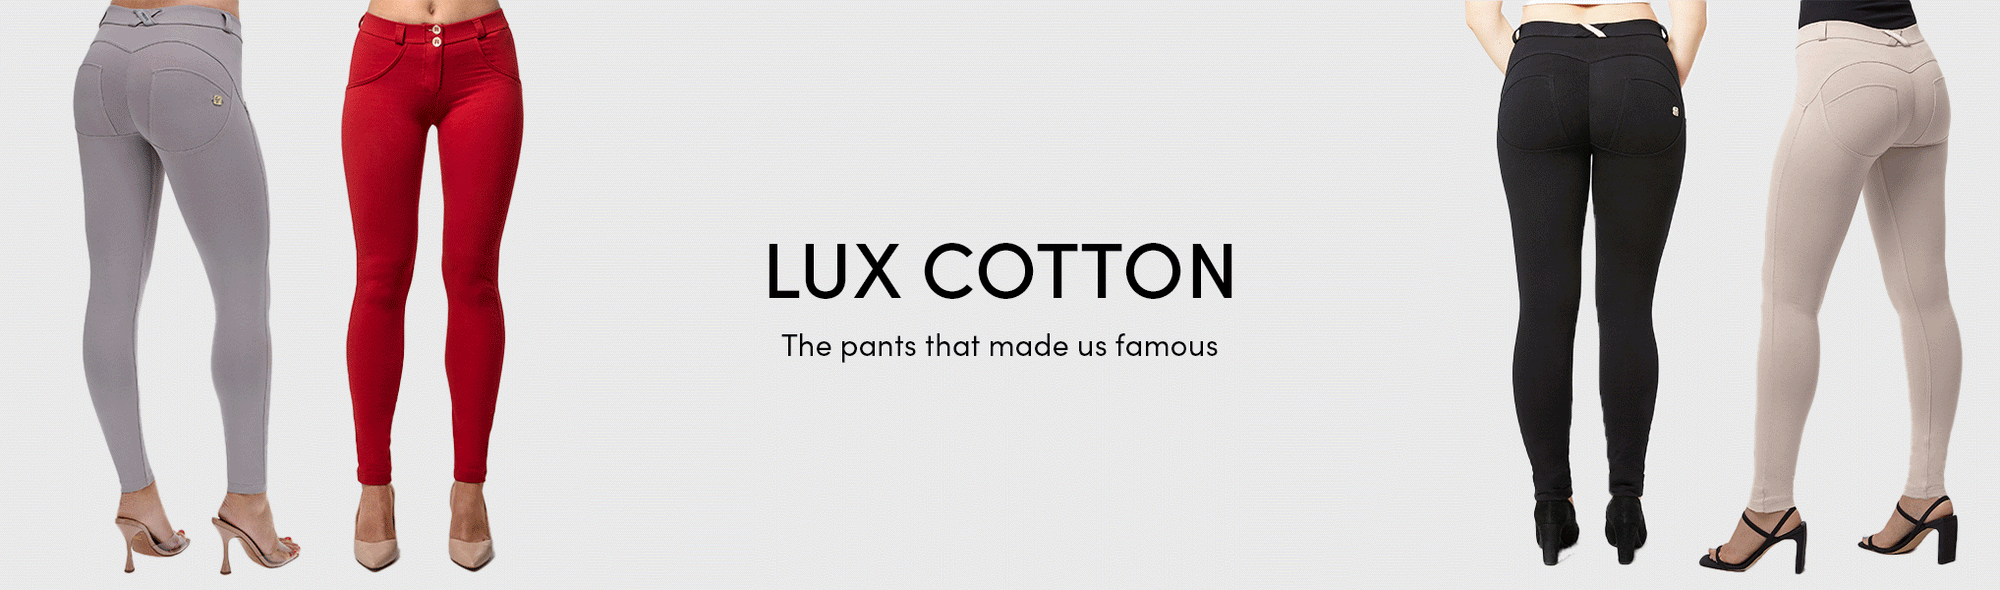 Lux Cotton